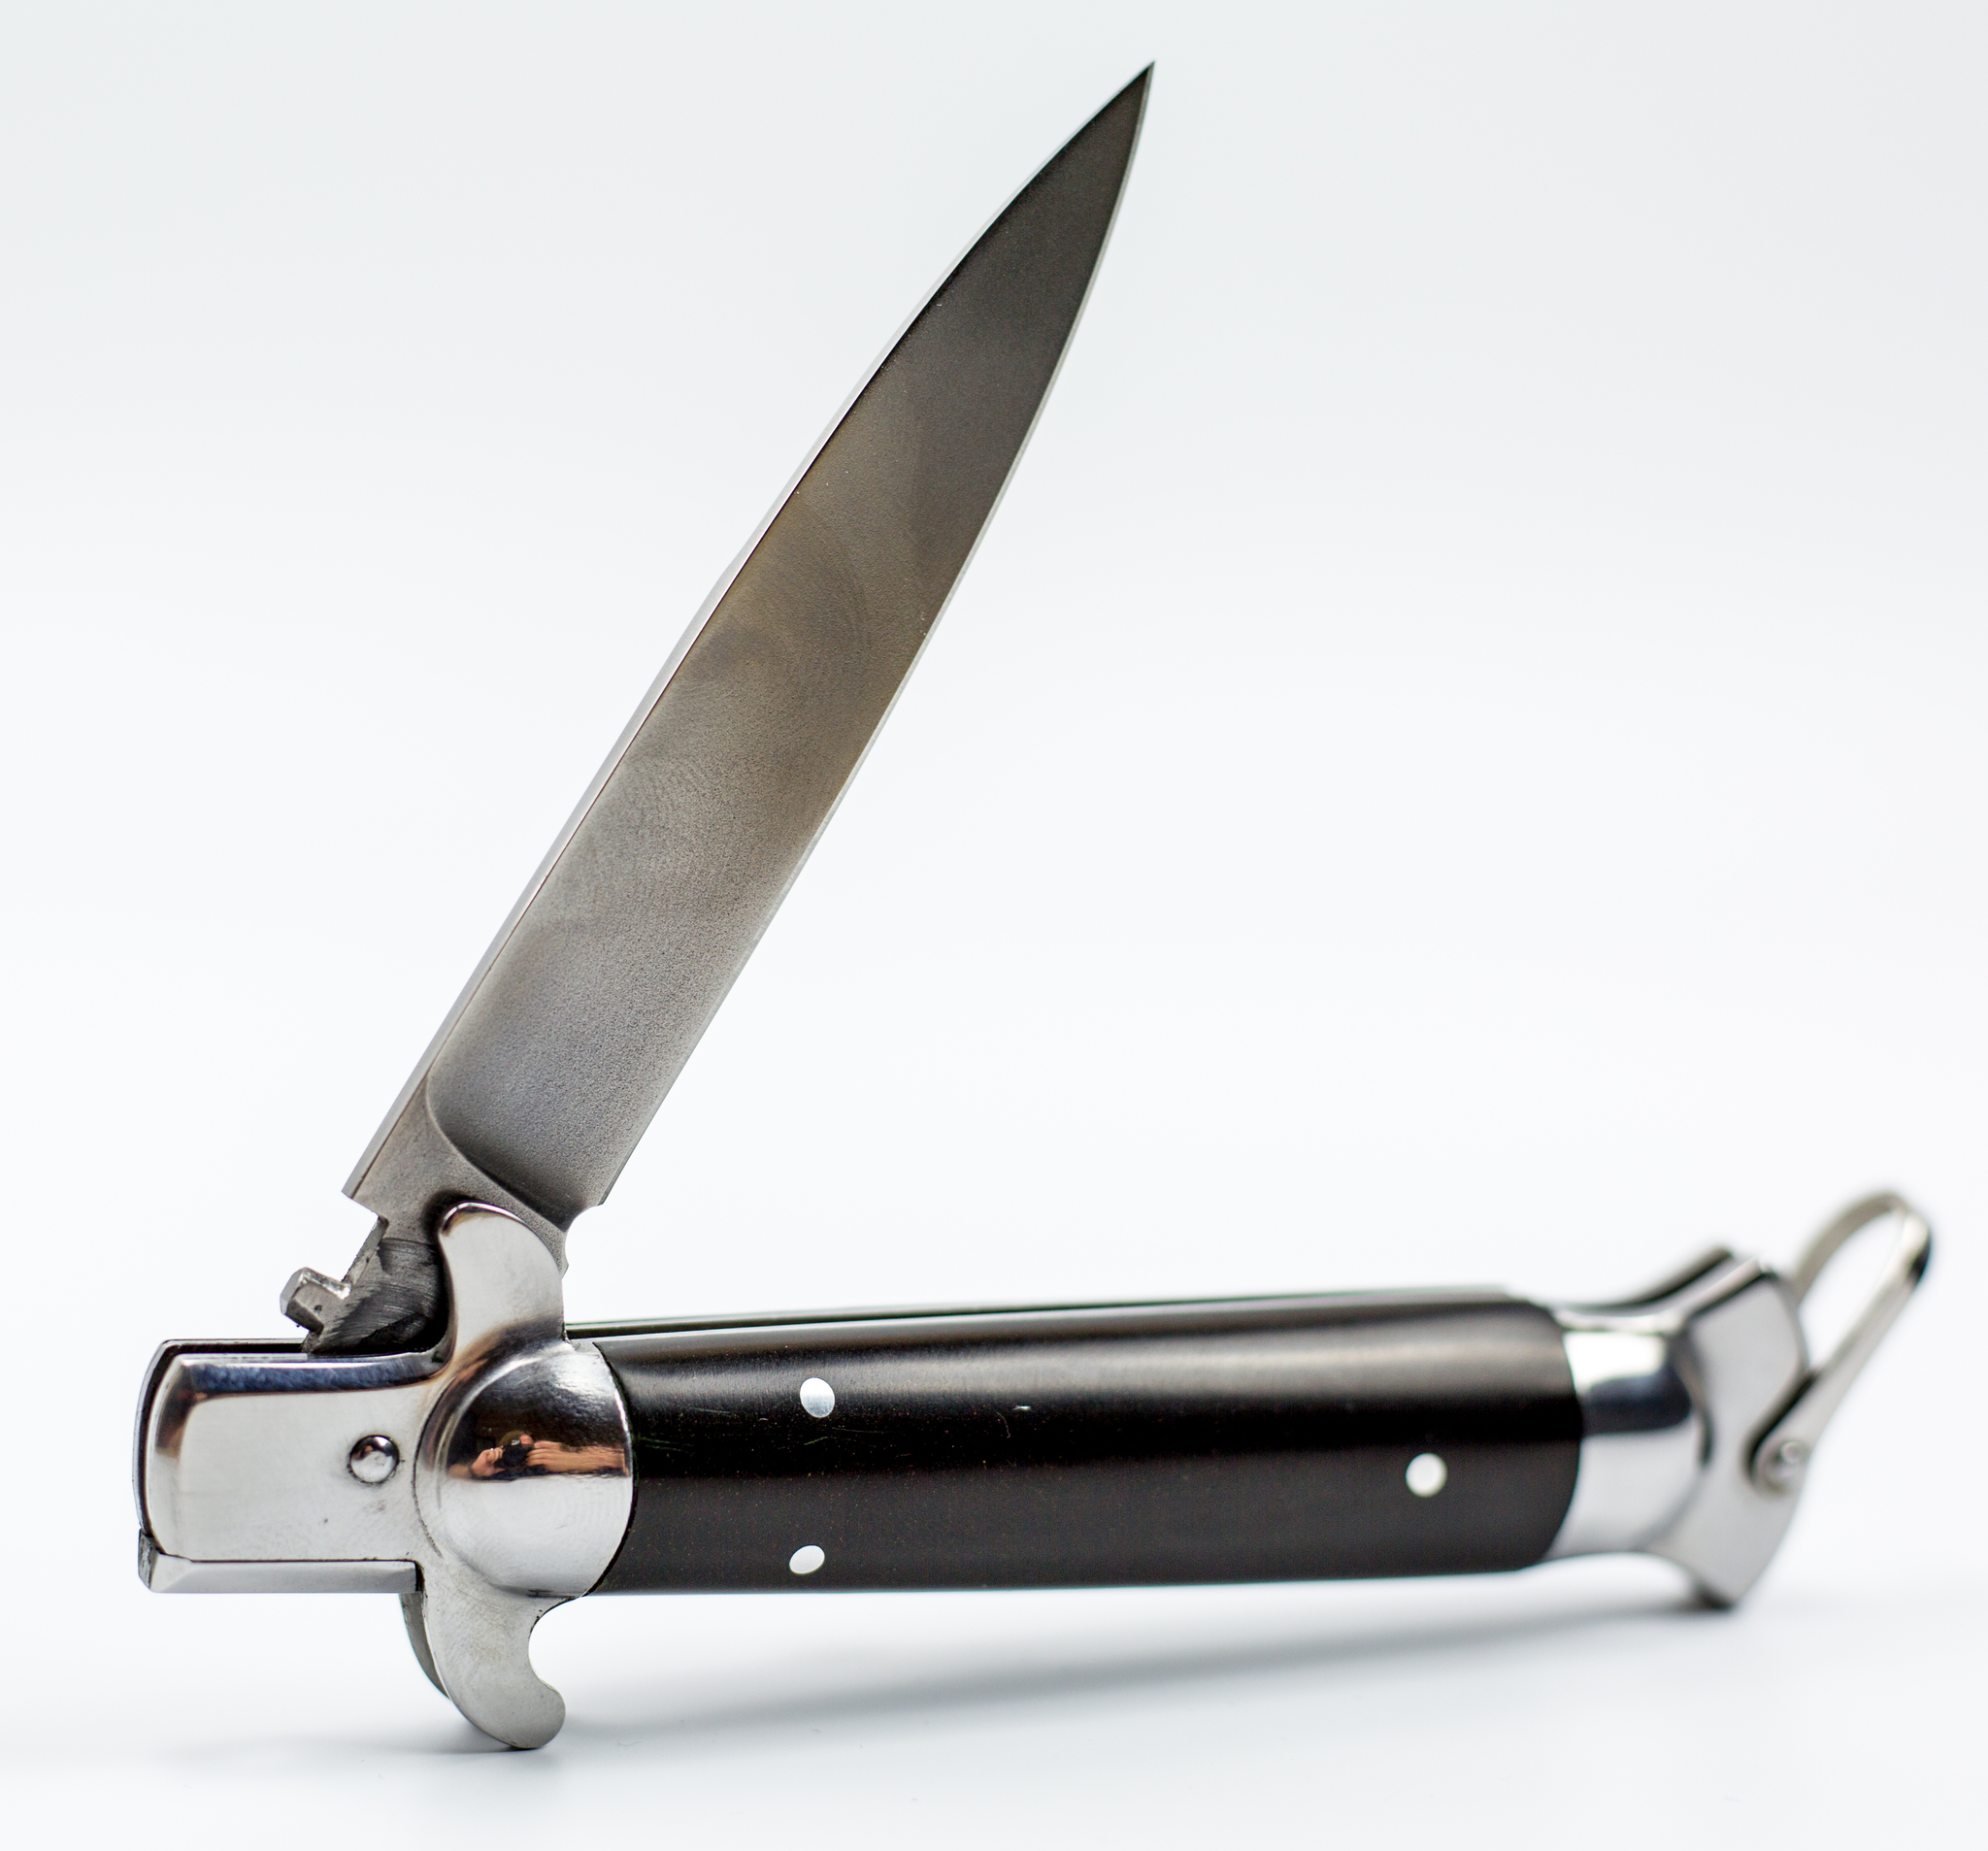 Выкидной нож Флинт, сталь булат, kk_flint_bul по цене 11290.0 руб .